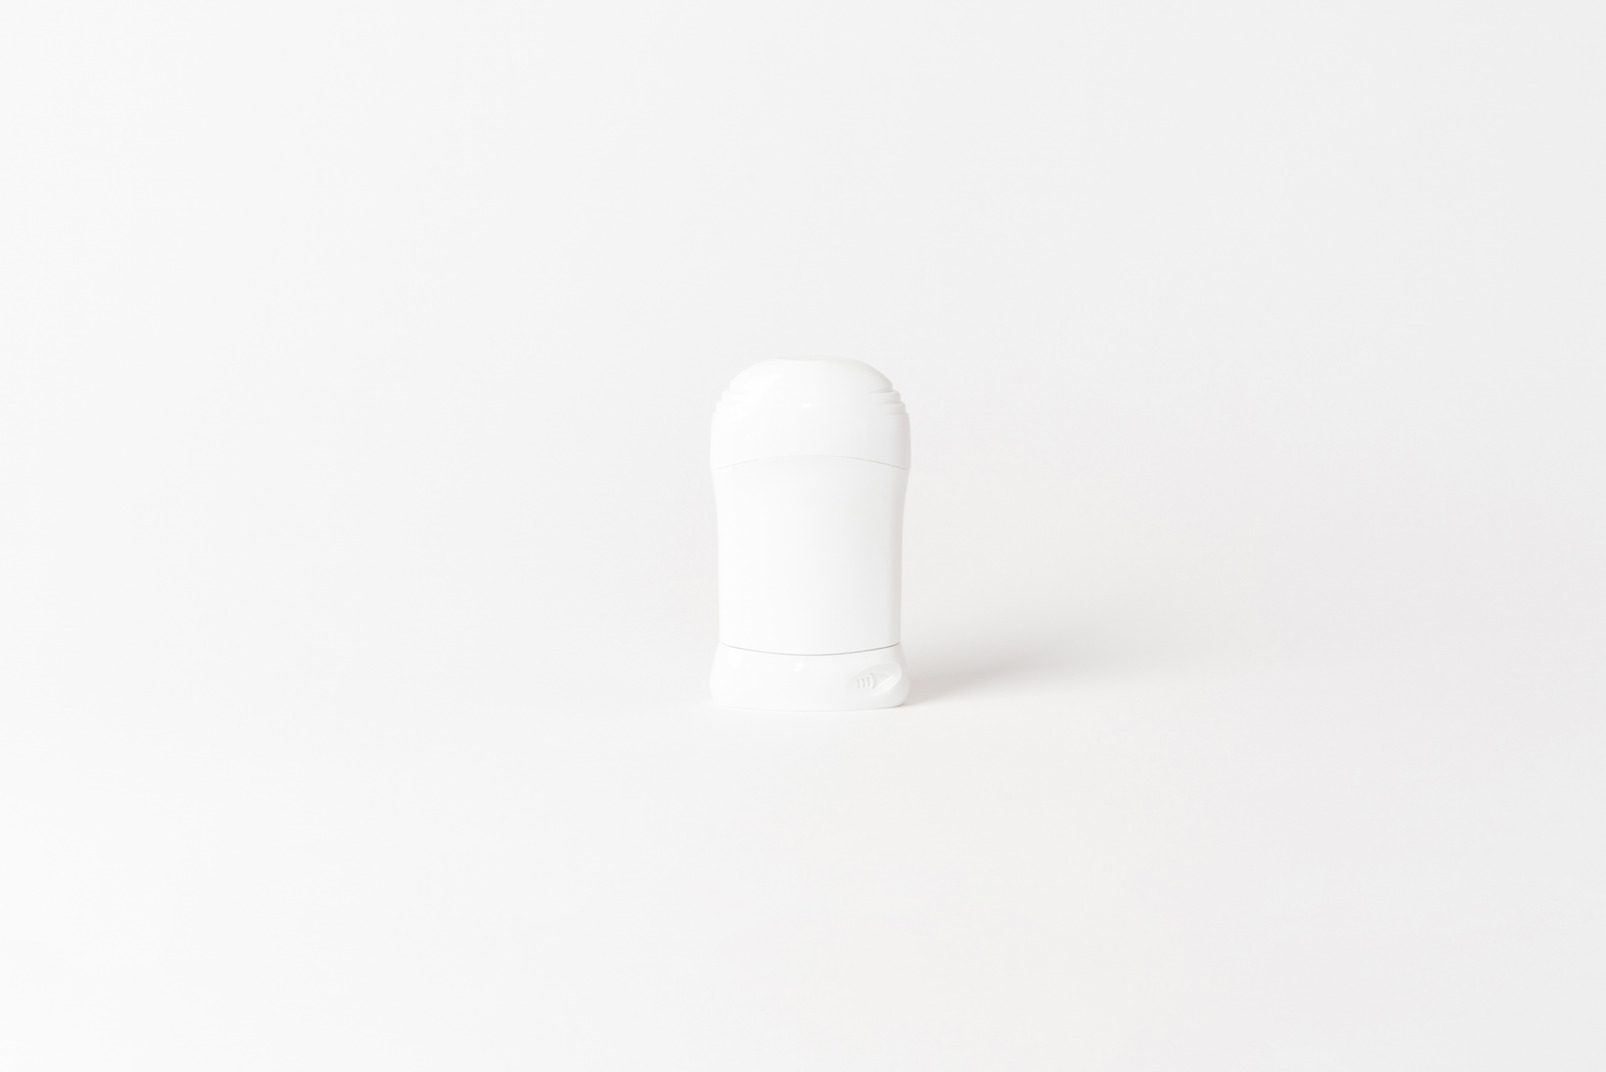 White plastic deodorant bottle on white background